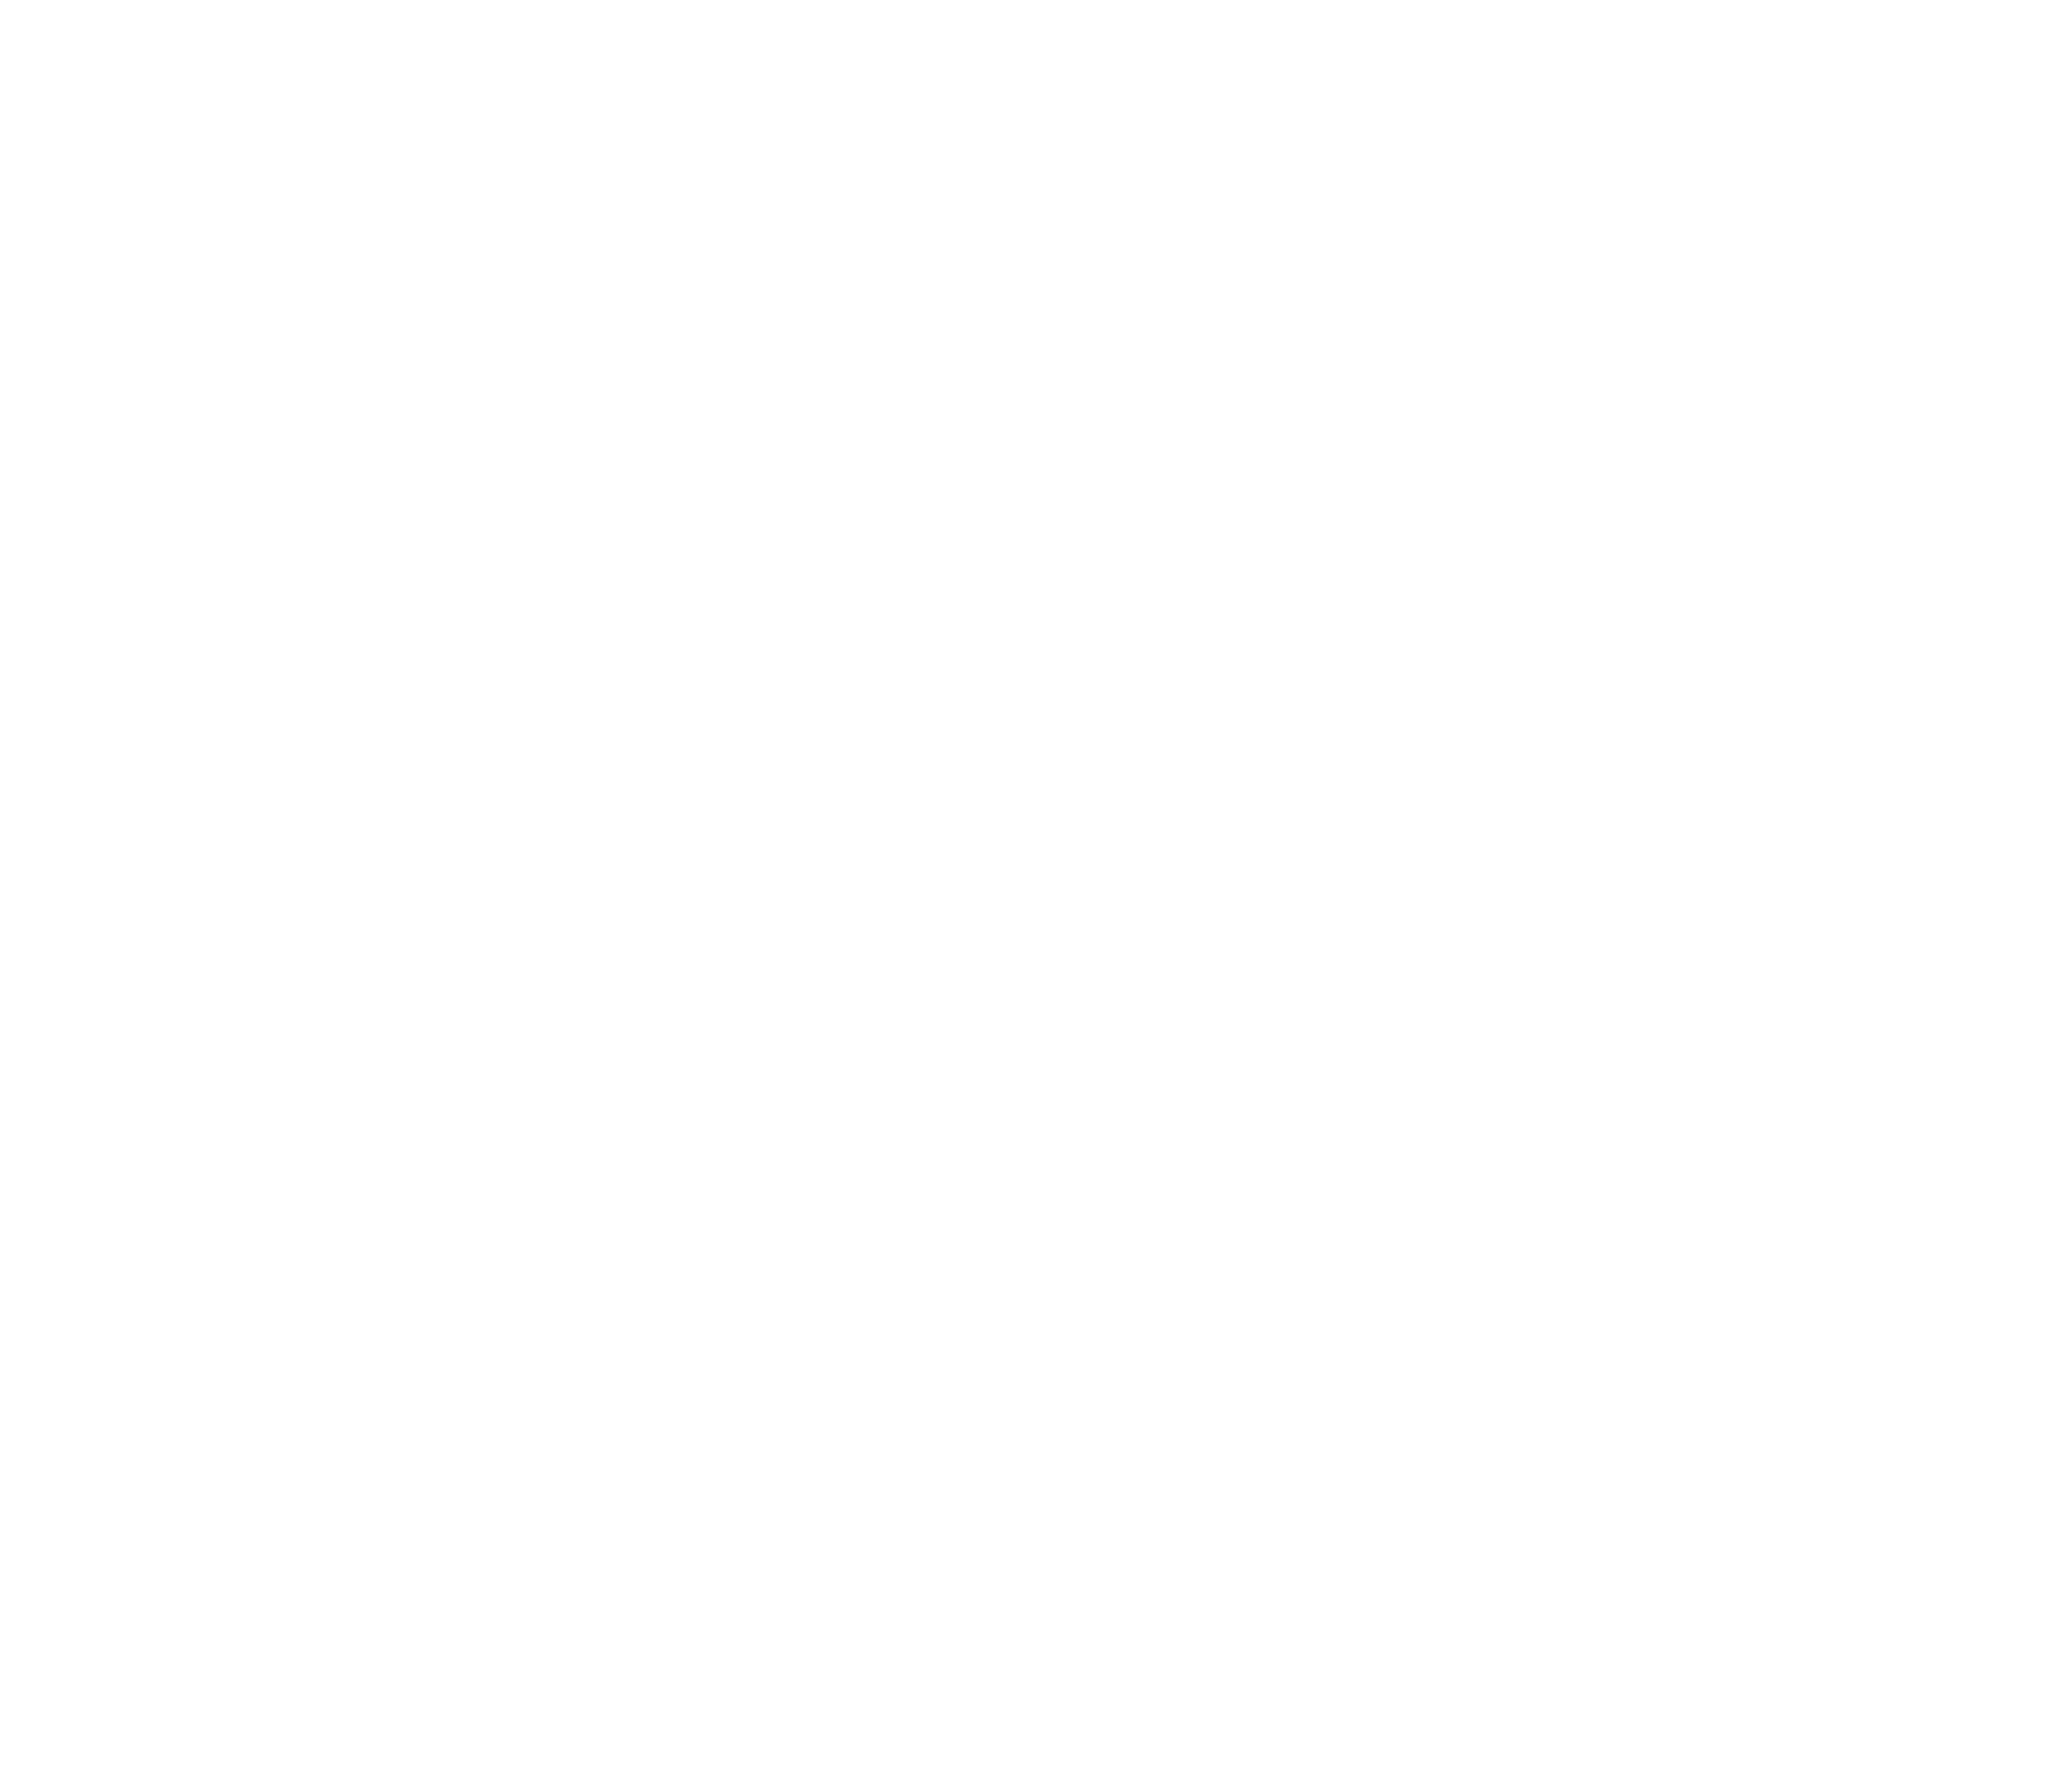 ProfitOps